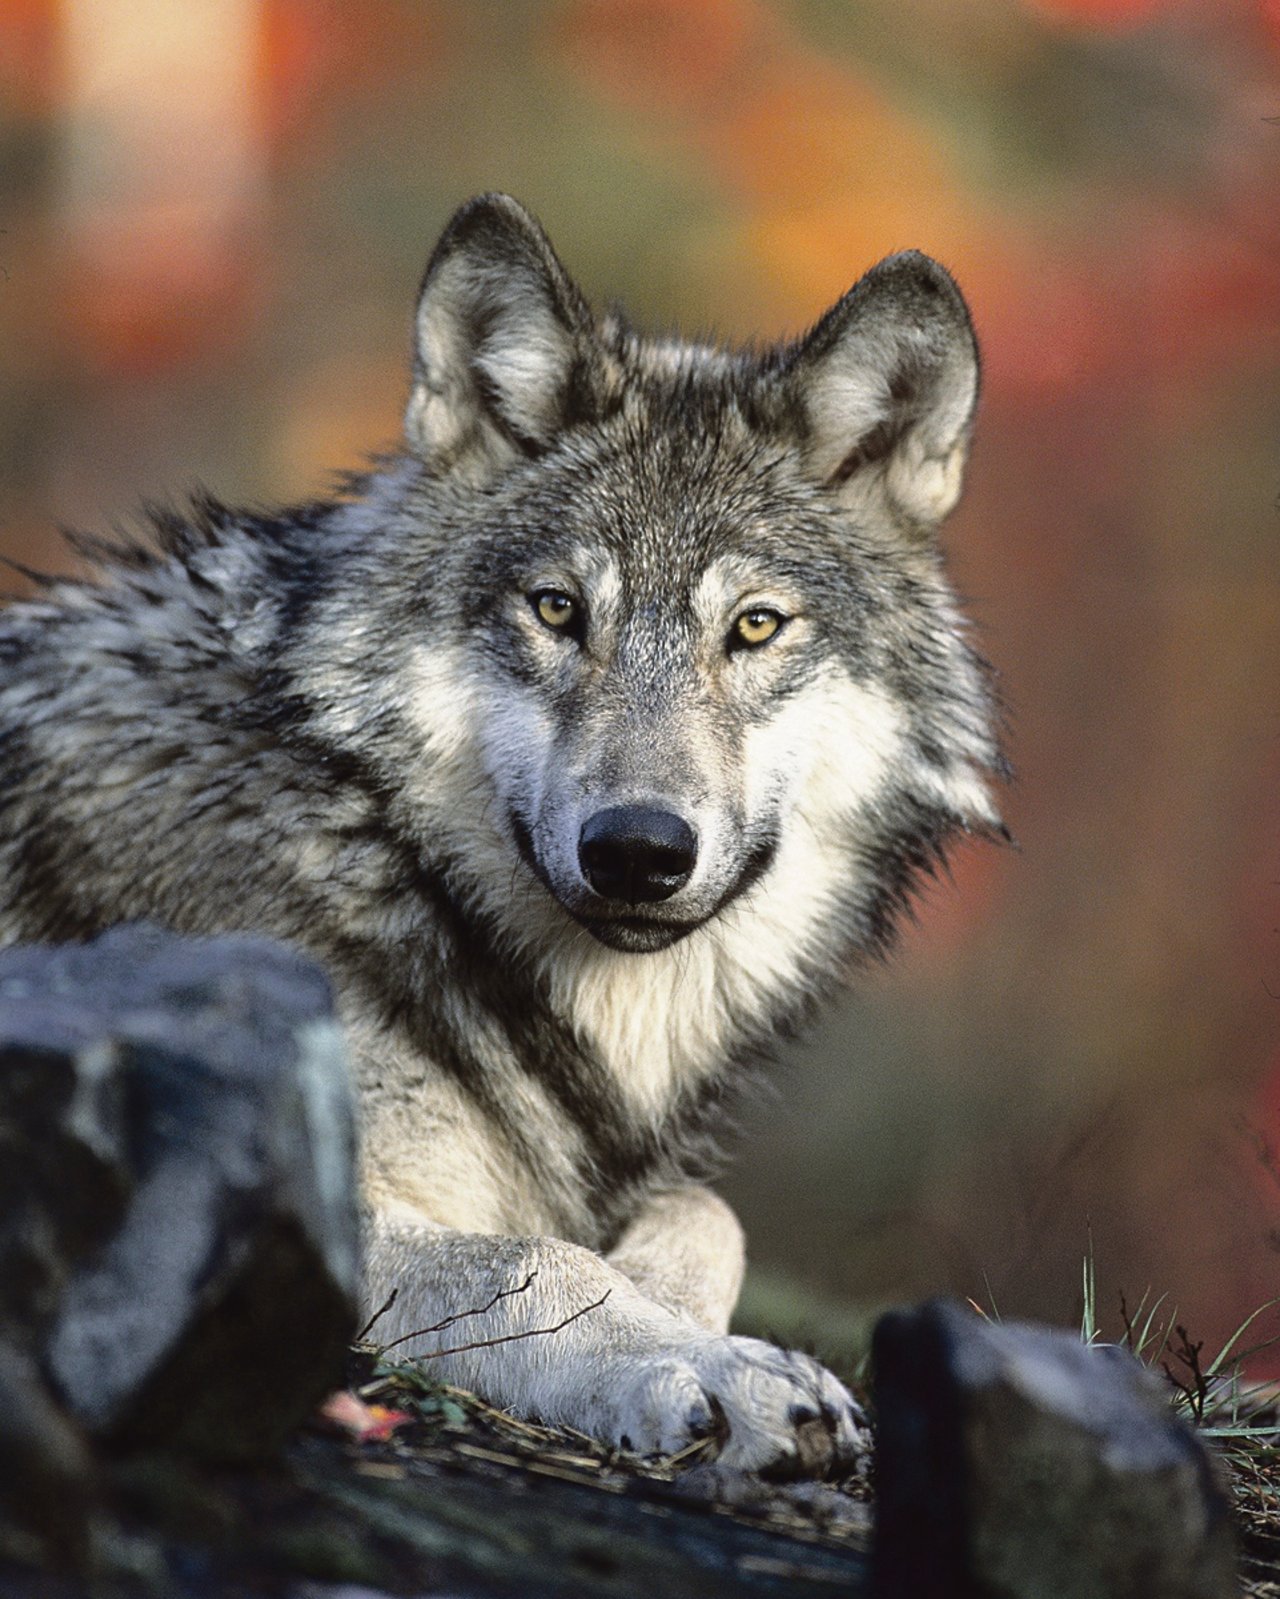 Nach der Abstimmung vom 27. September 2020 ist klar: Der Wolf bleibt in der Schweiz vorerst umfassend geschützt. (Bild Pixabay)